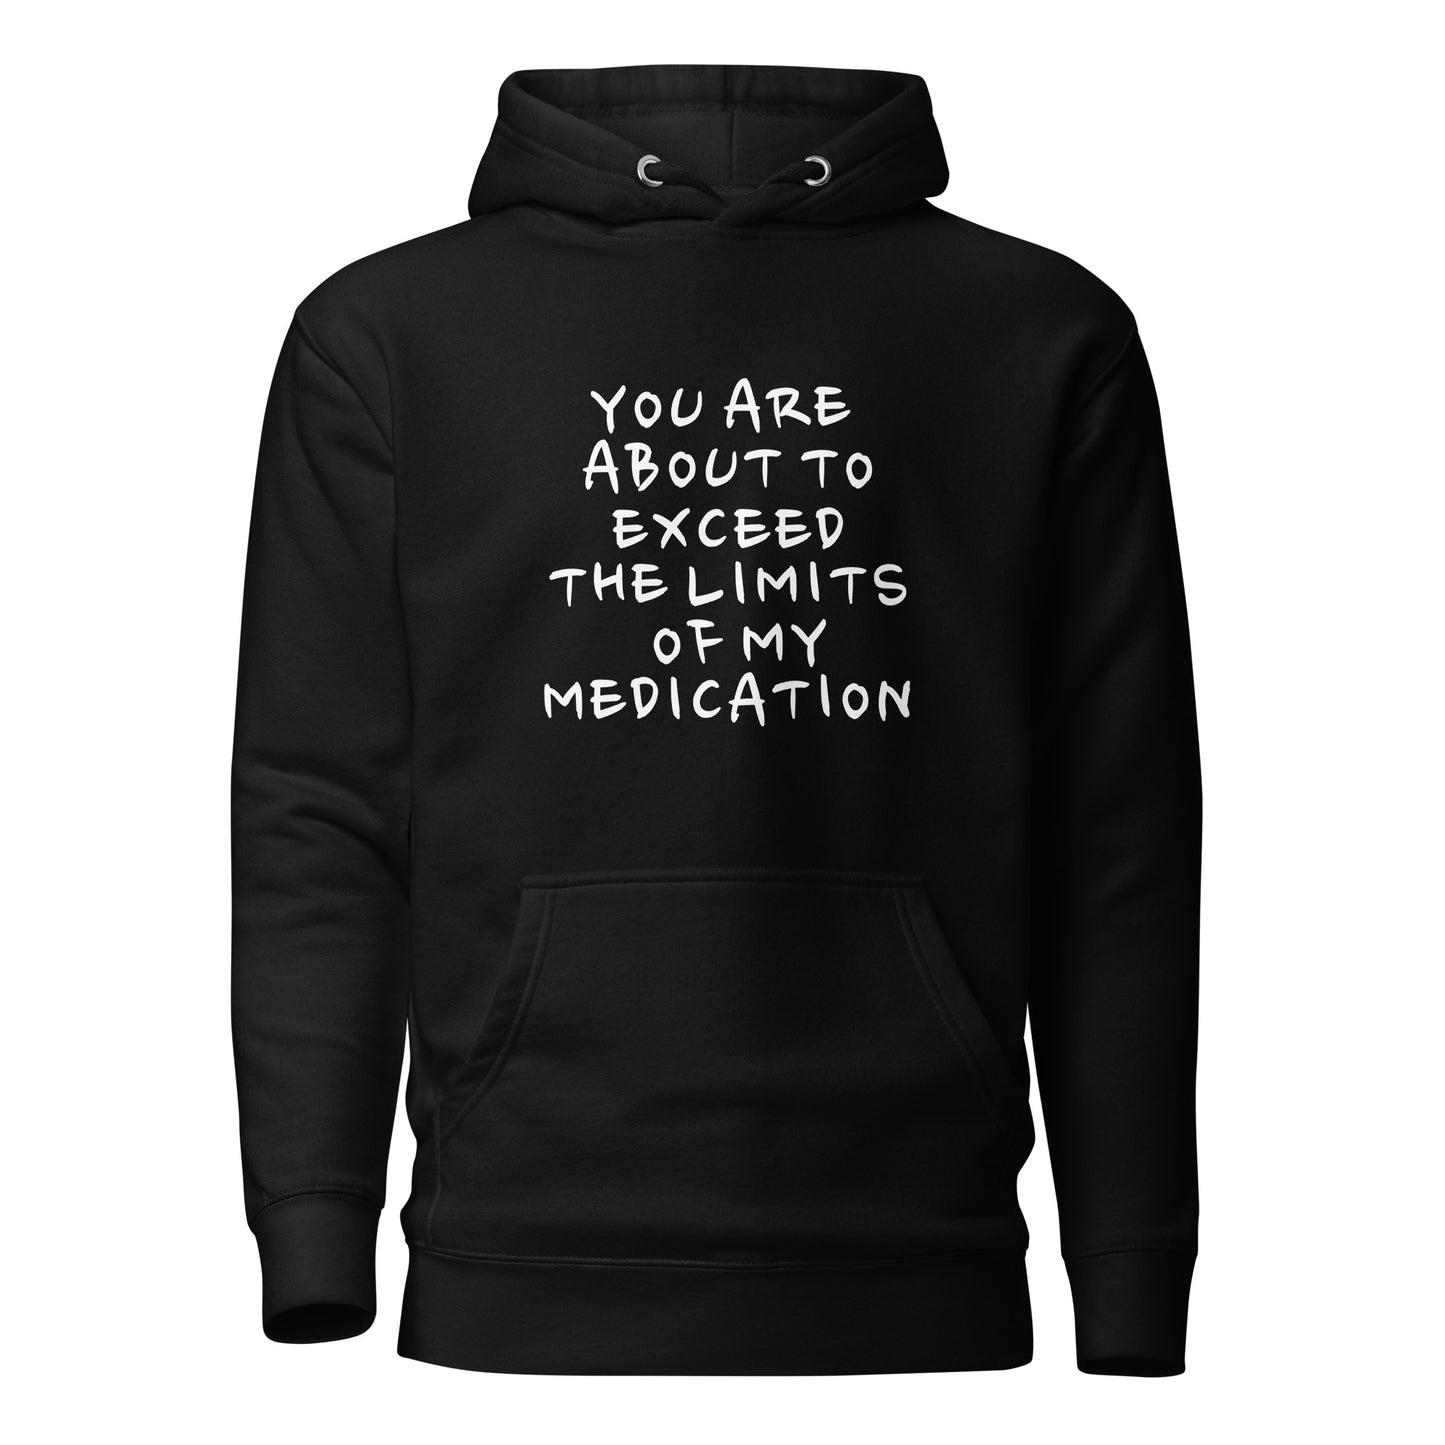 "Medication" Hoodie